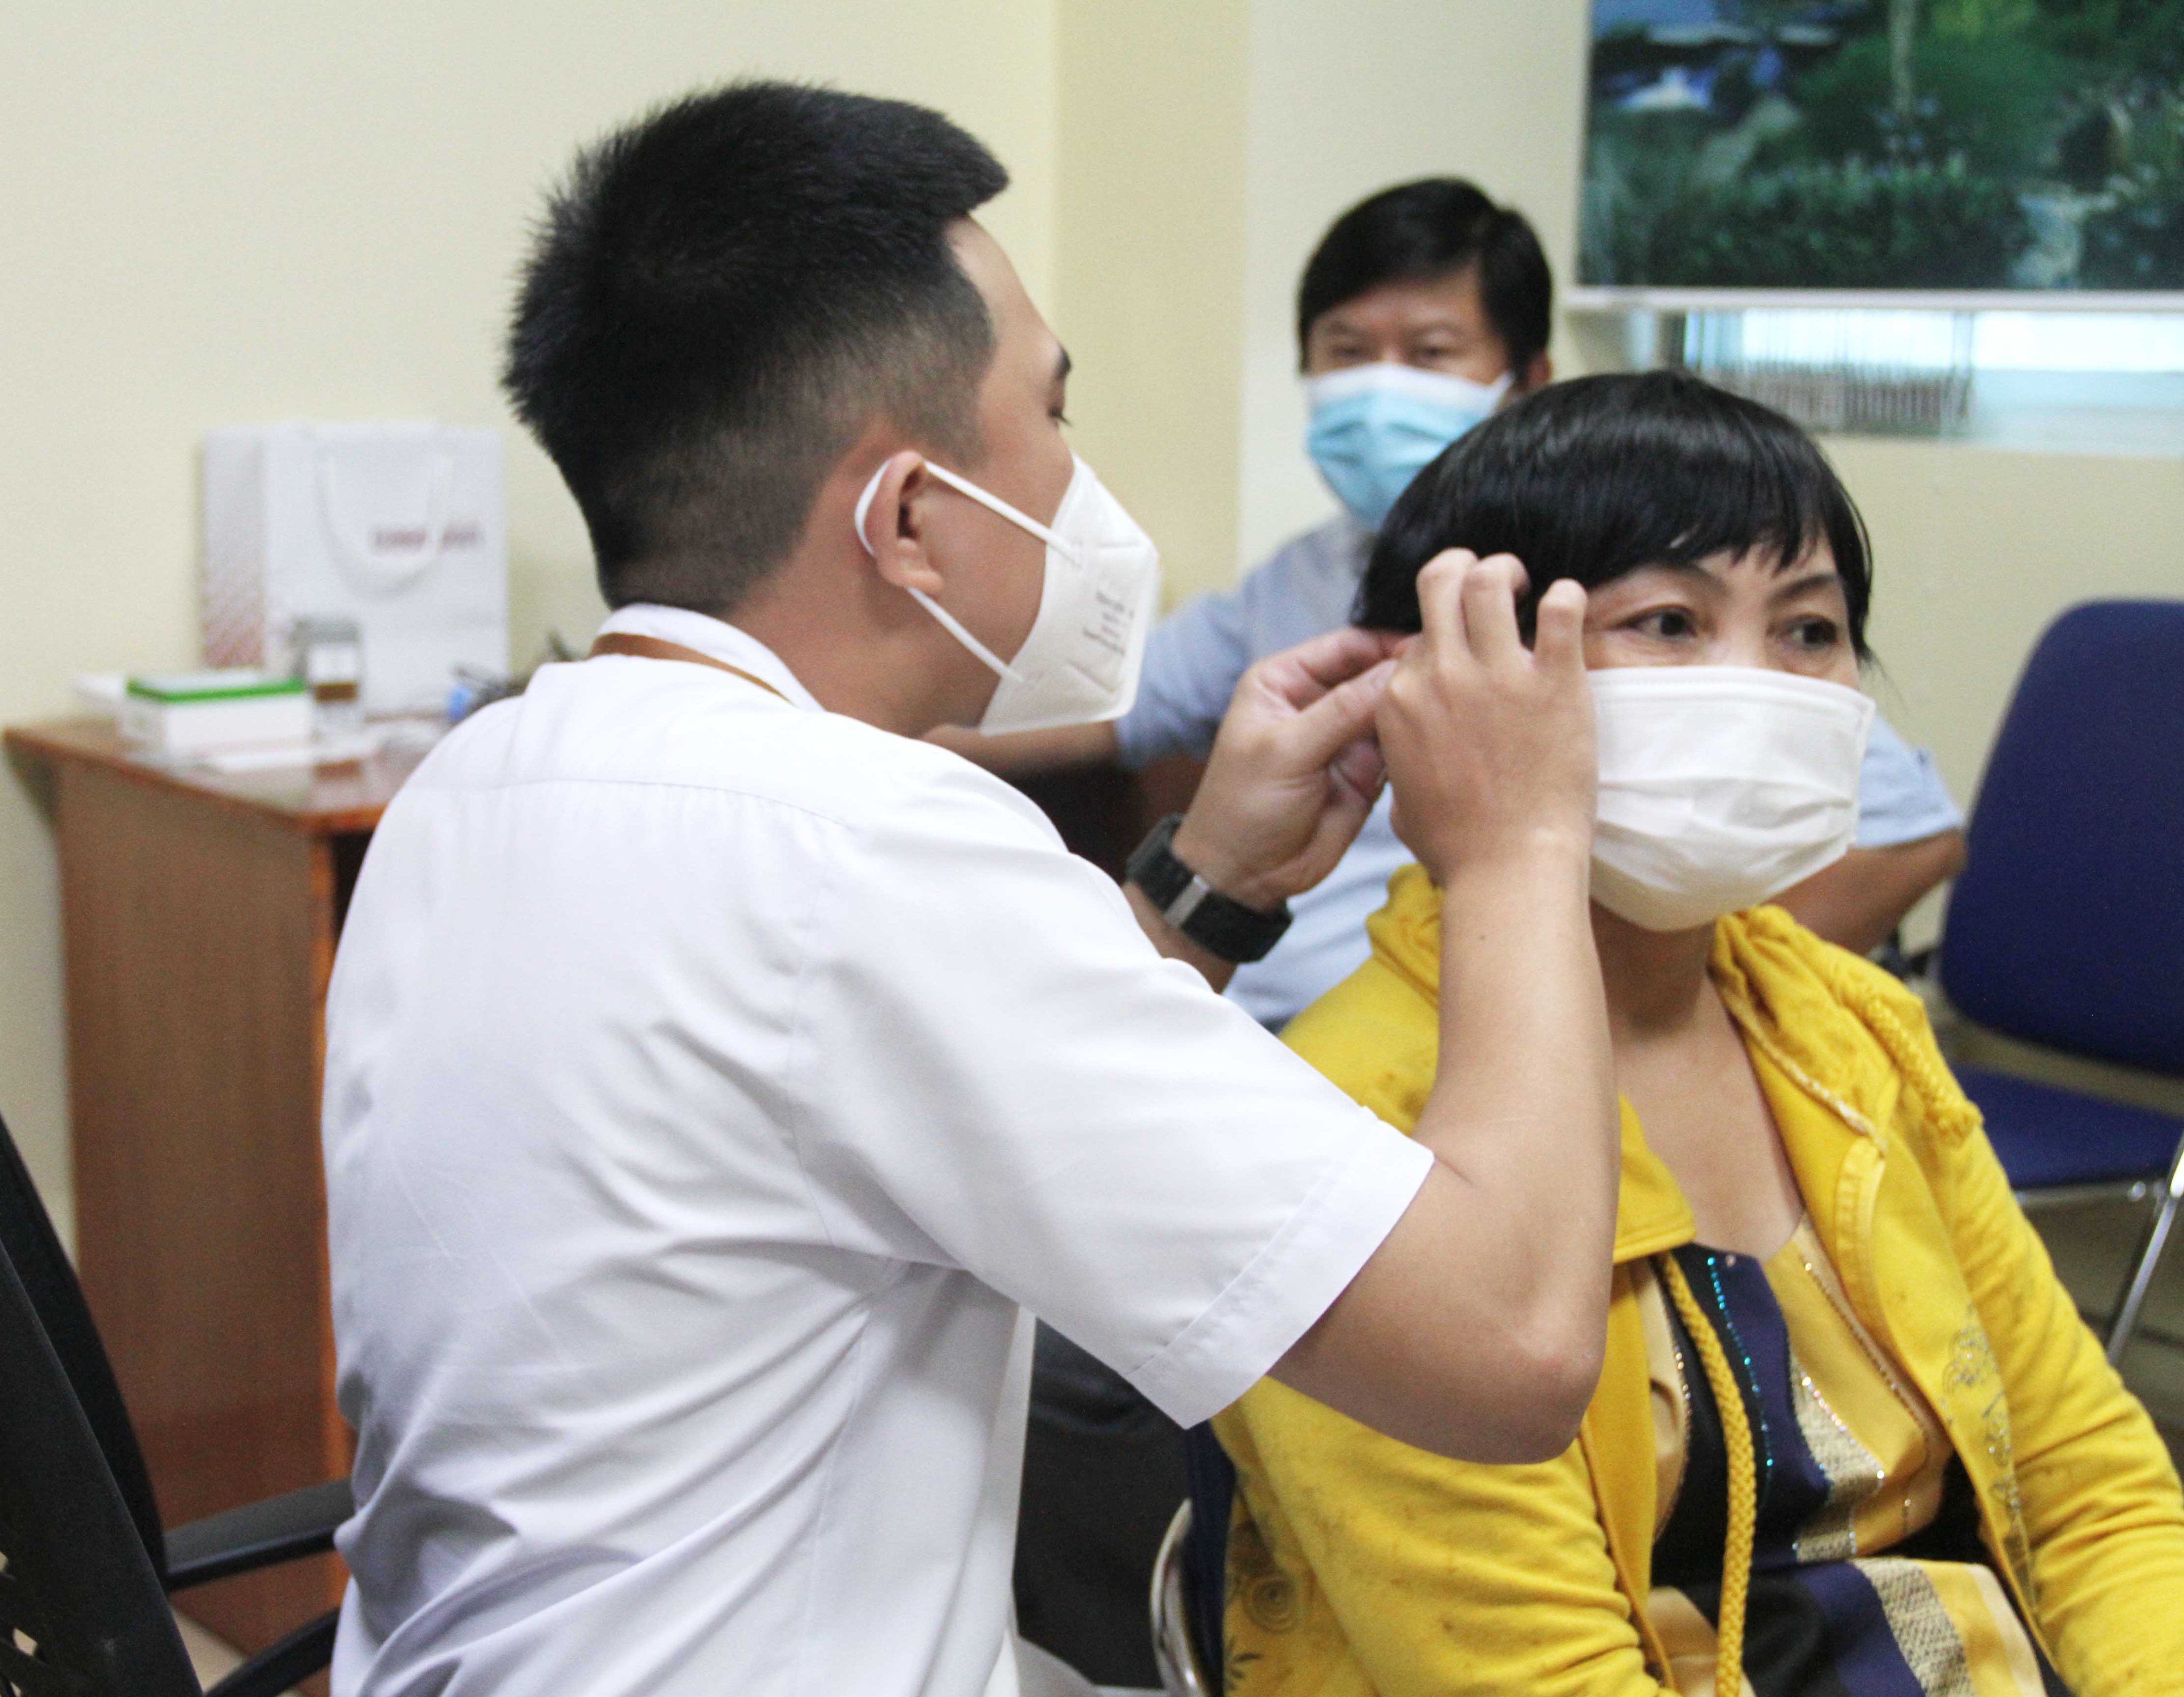 Đo thính lực và cung cấp máy trợ thính cho người bệnh suy giảm thính lực tại Thanh Vũ Medic